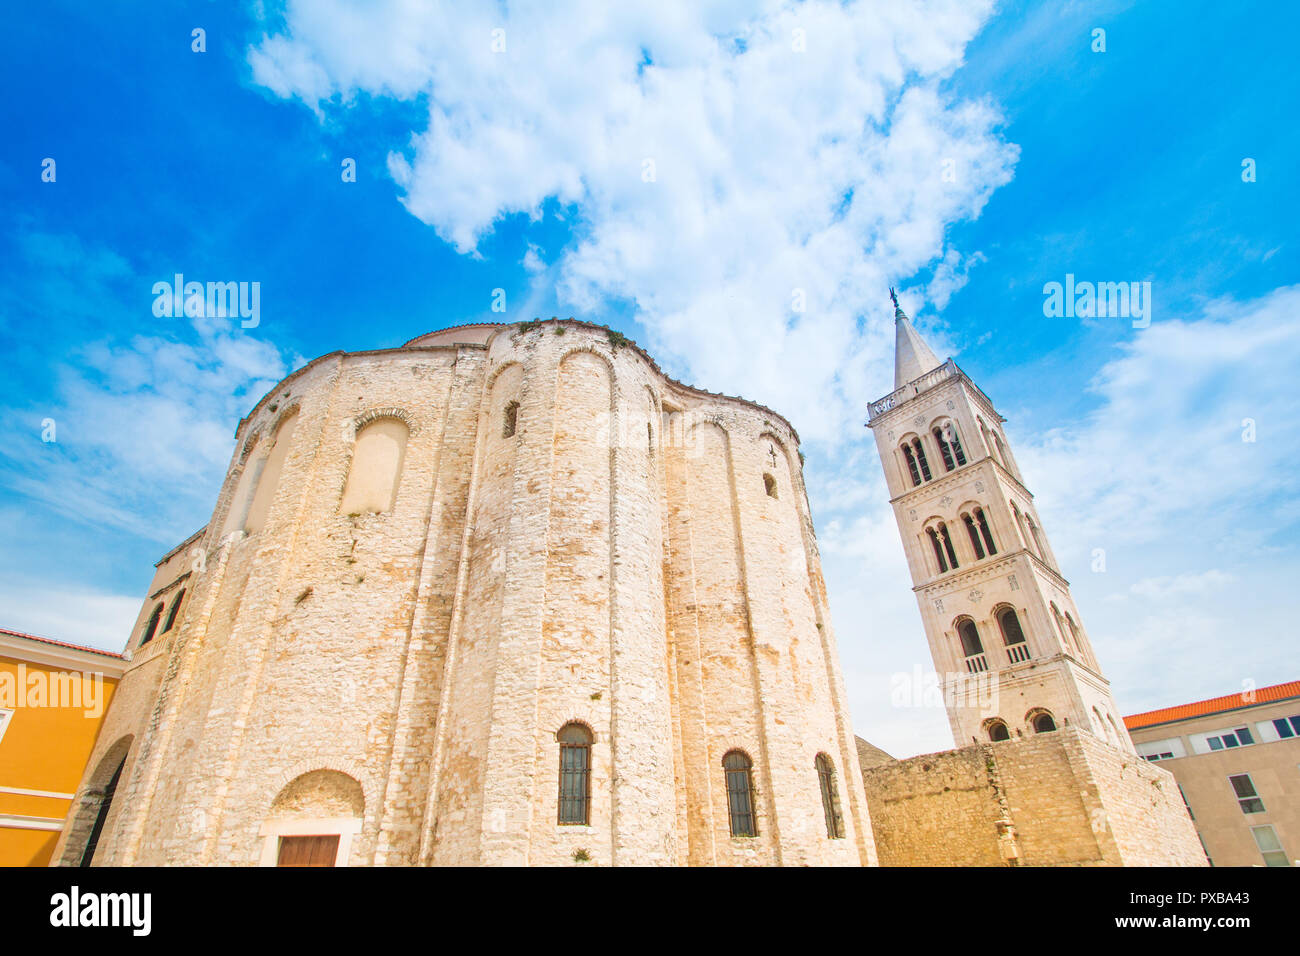 Croatia, Dalmatia, Zadar, saint Donatus (Sveti Donat) church, mediterranean cityscape Stock Photo